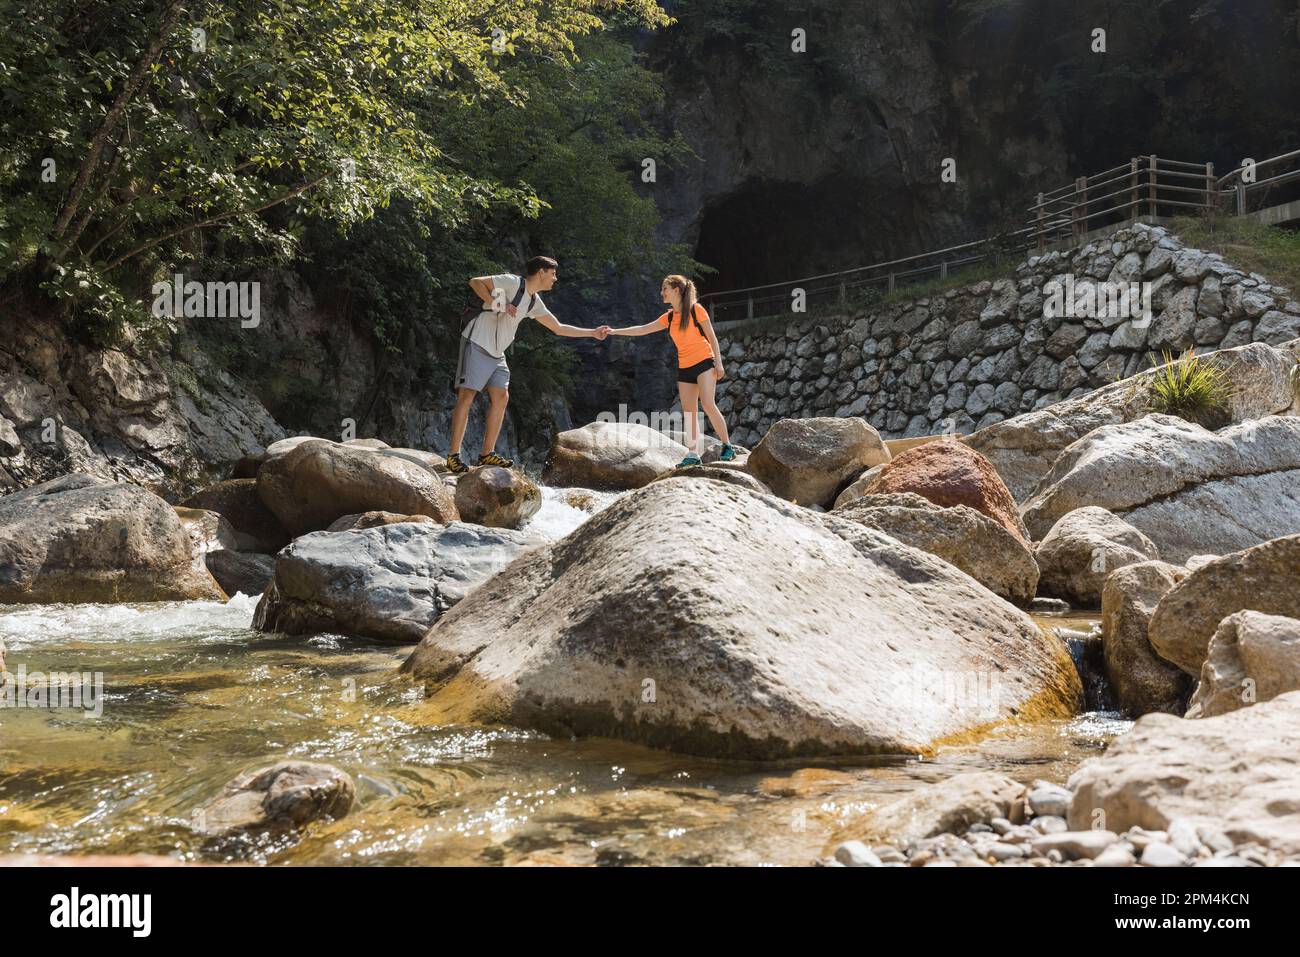 Coppia di escursionisti che cammina sulle rocce mentre attraversa il fiume di montagna, passando per un tour a piedi attraverso la gola. Concetto di stile di vita di viaggio e avventura. Foto Stock